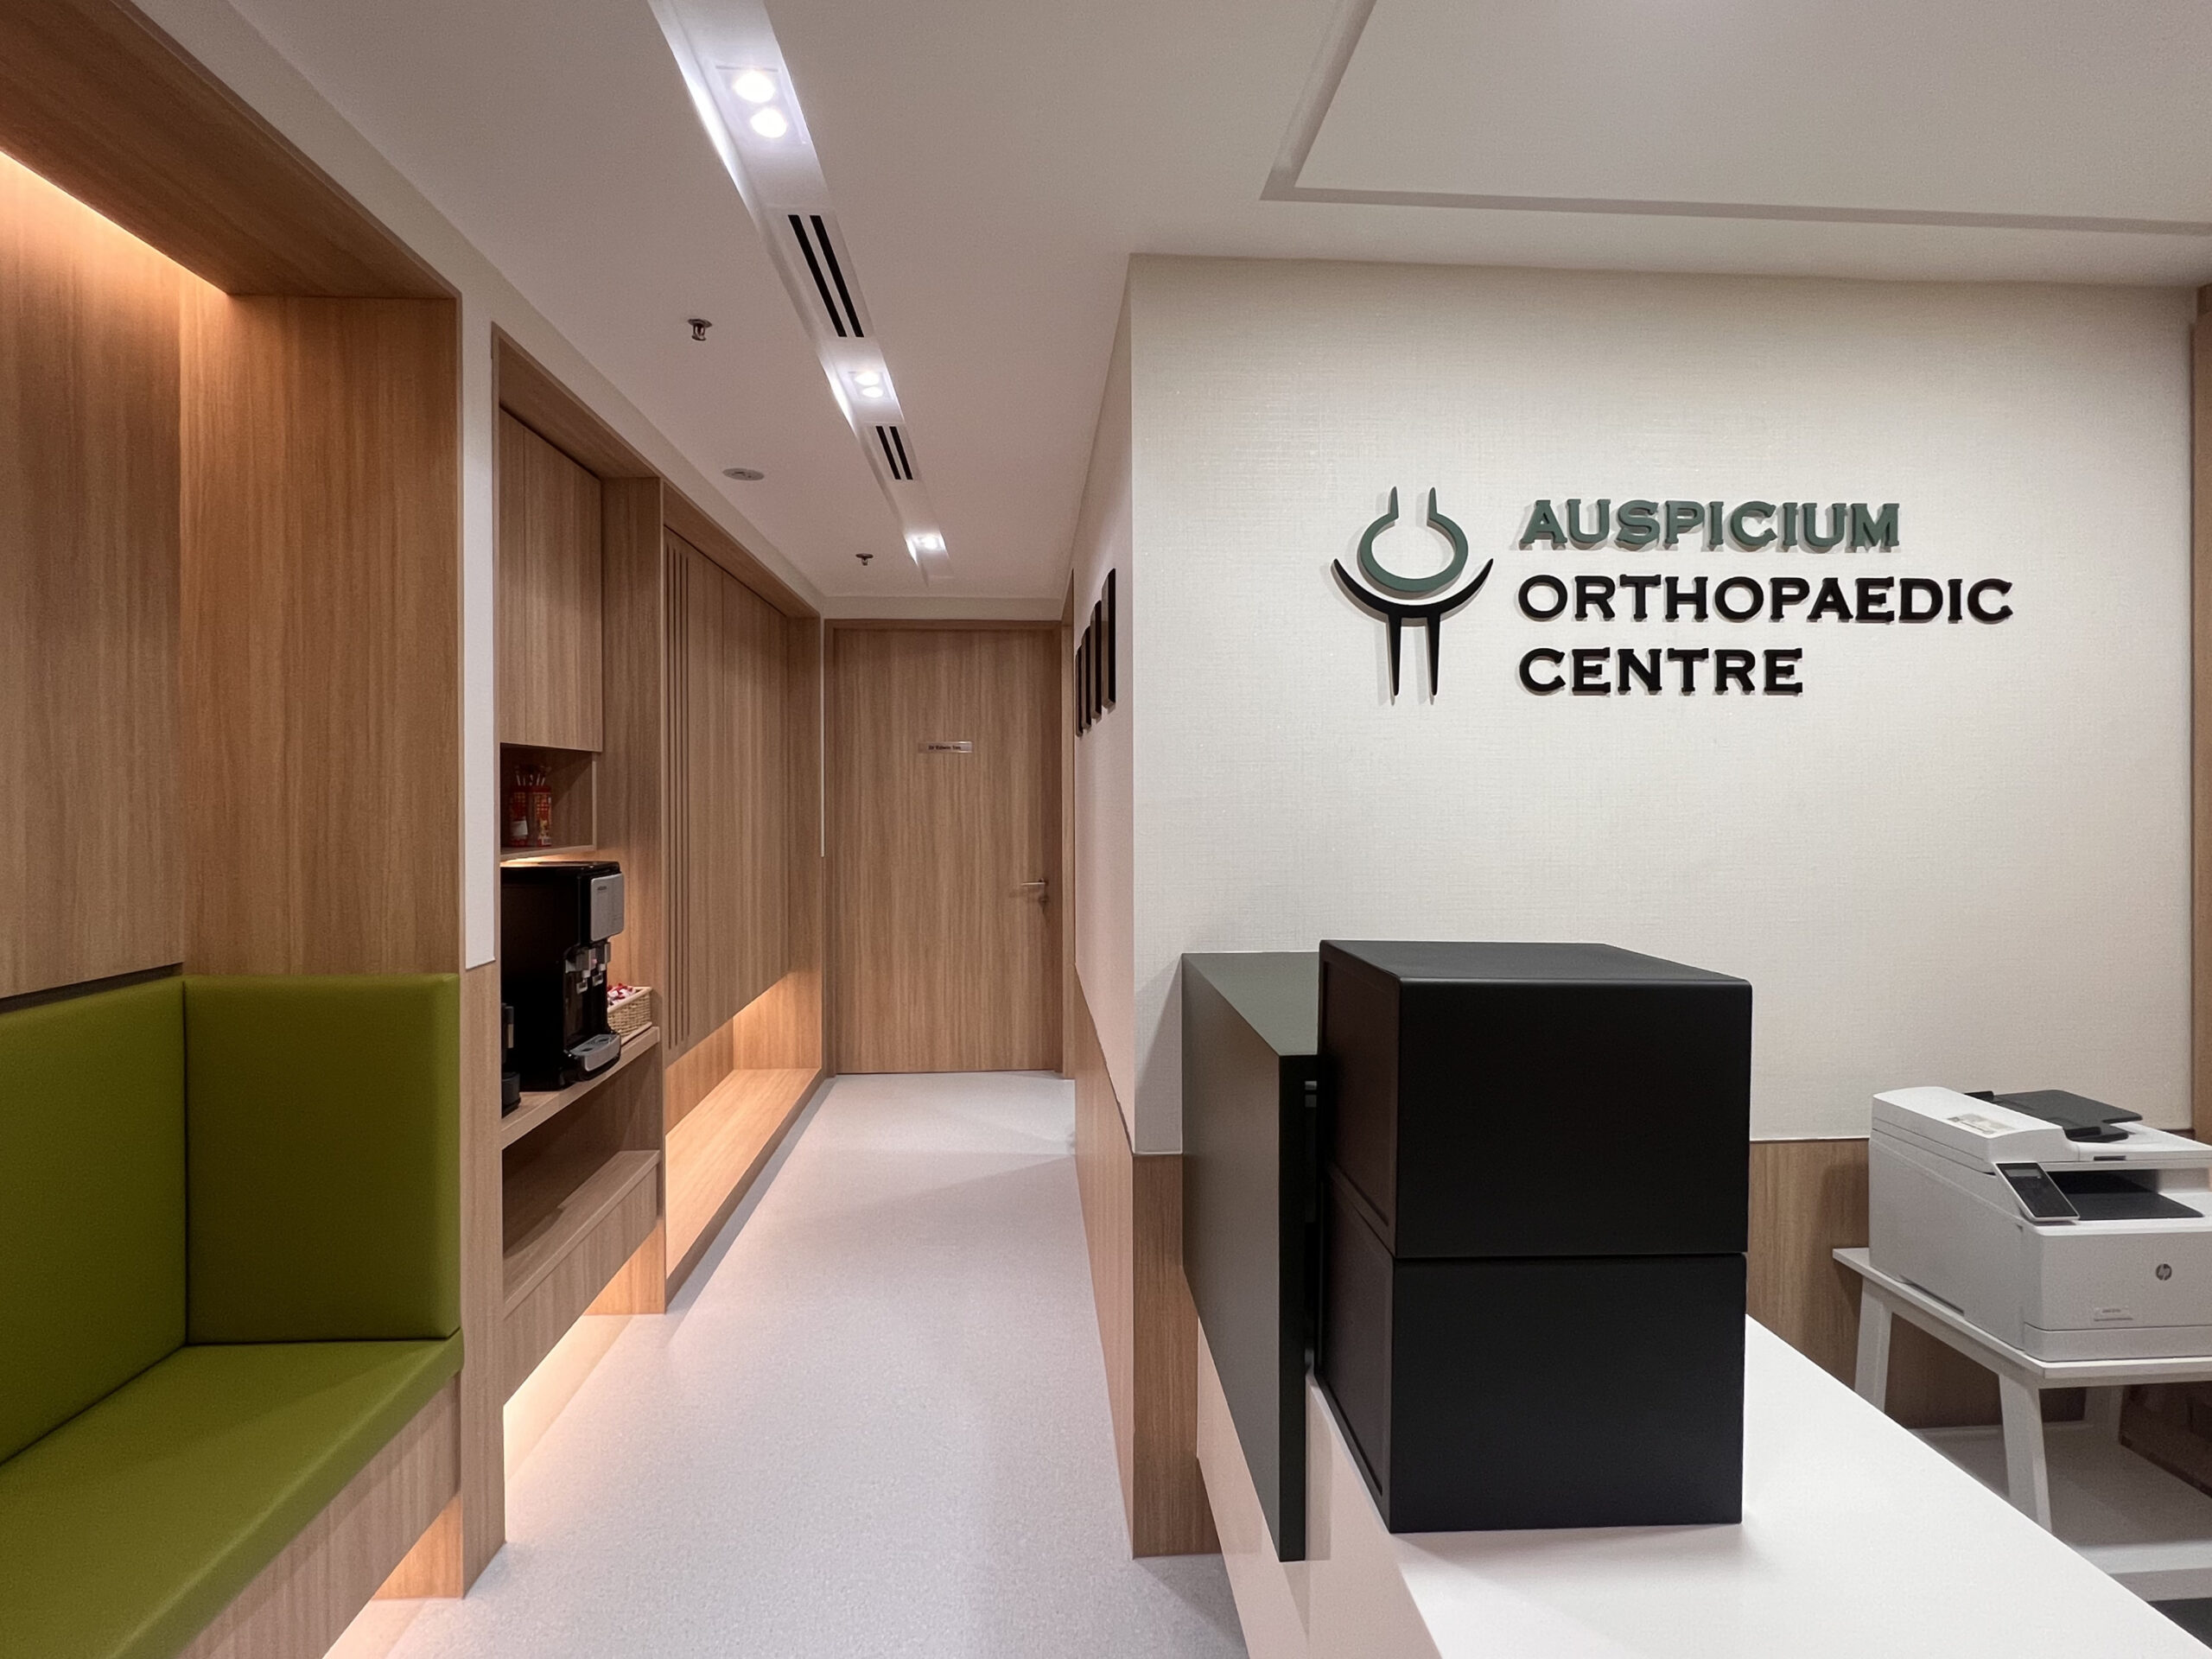 Image of Auspicium Orthopaedic Centre office